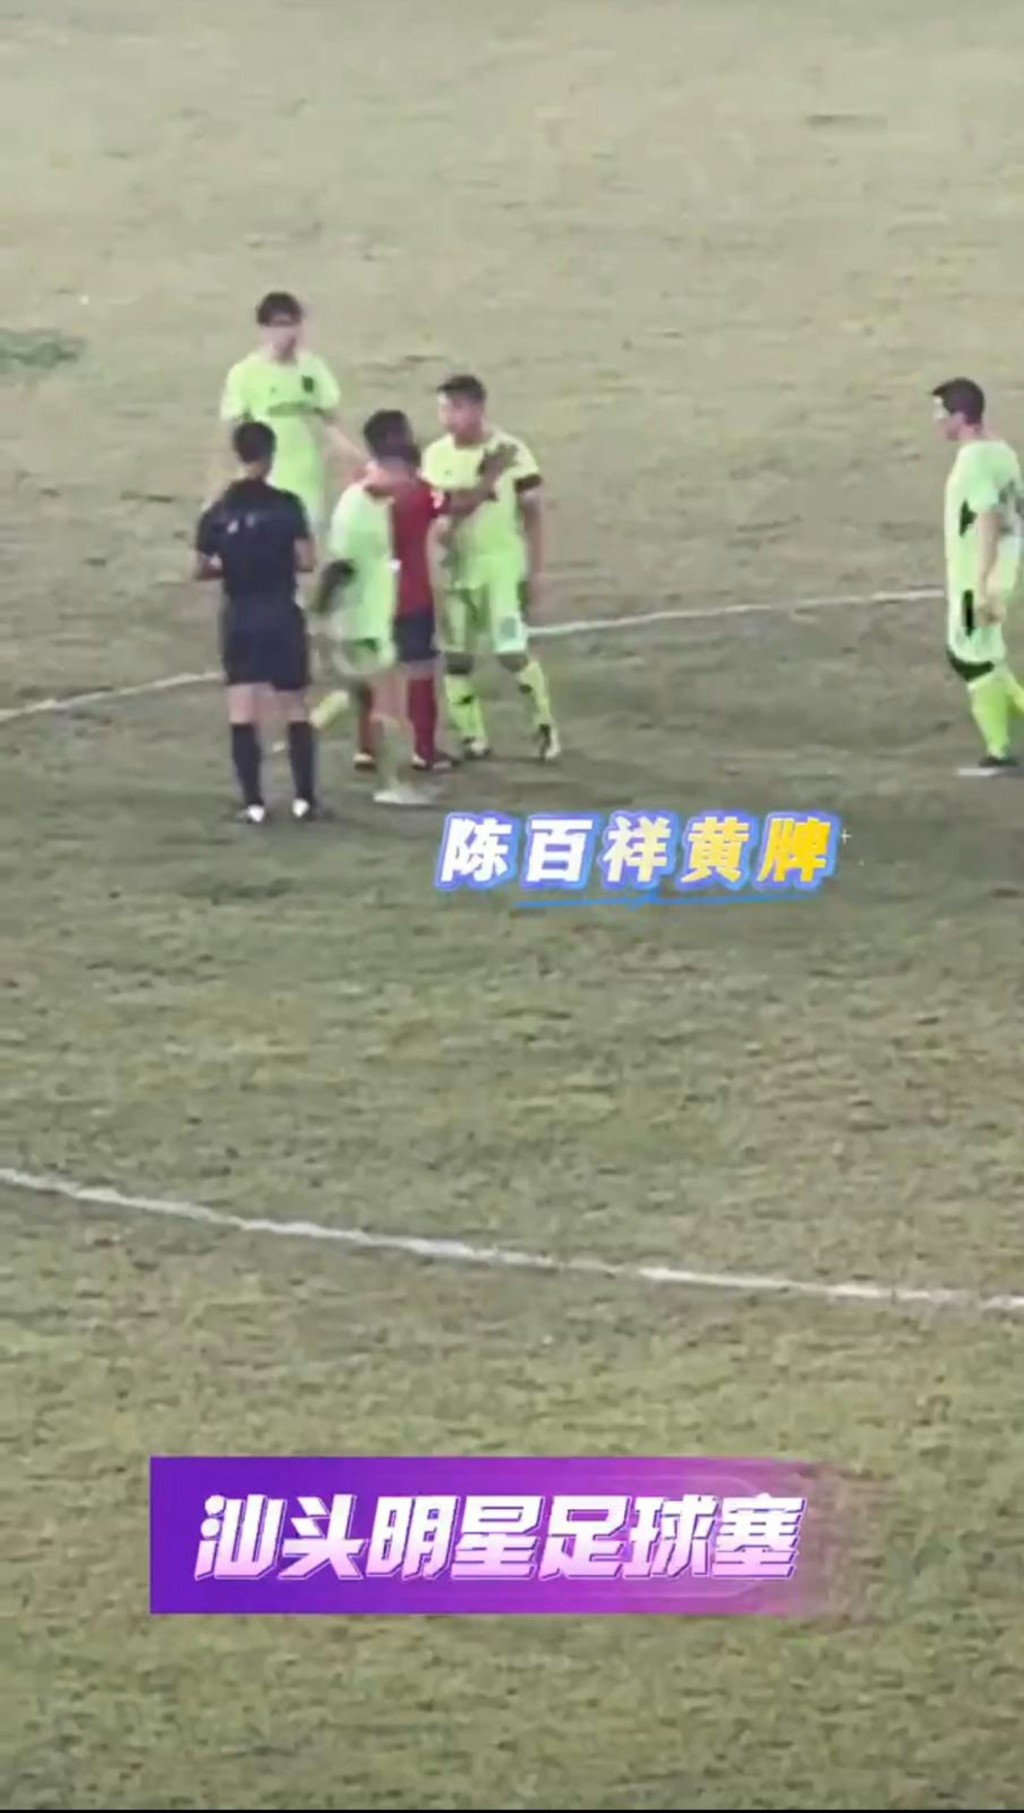 幸得队友拉开才没有进一步冲突，最终陈百祥独个步离球场。